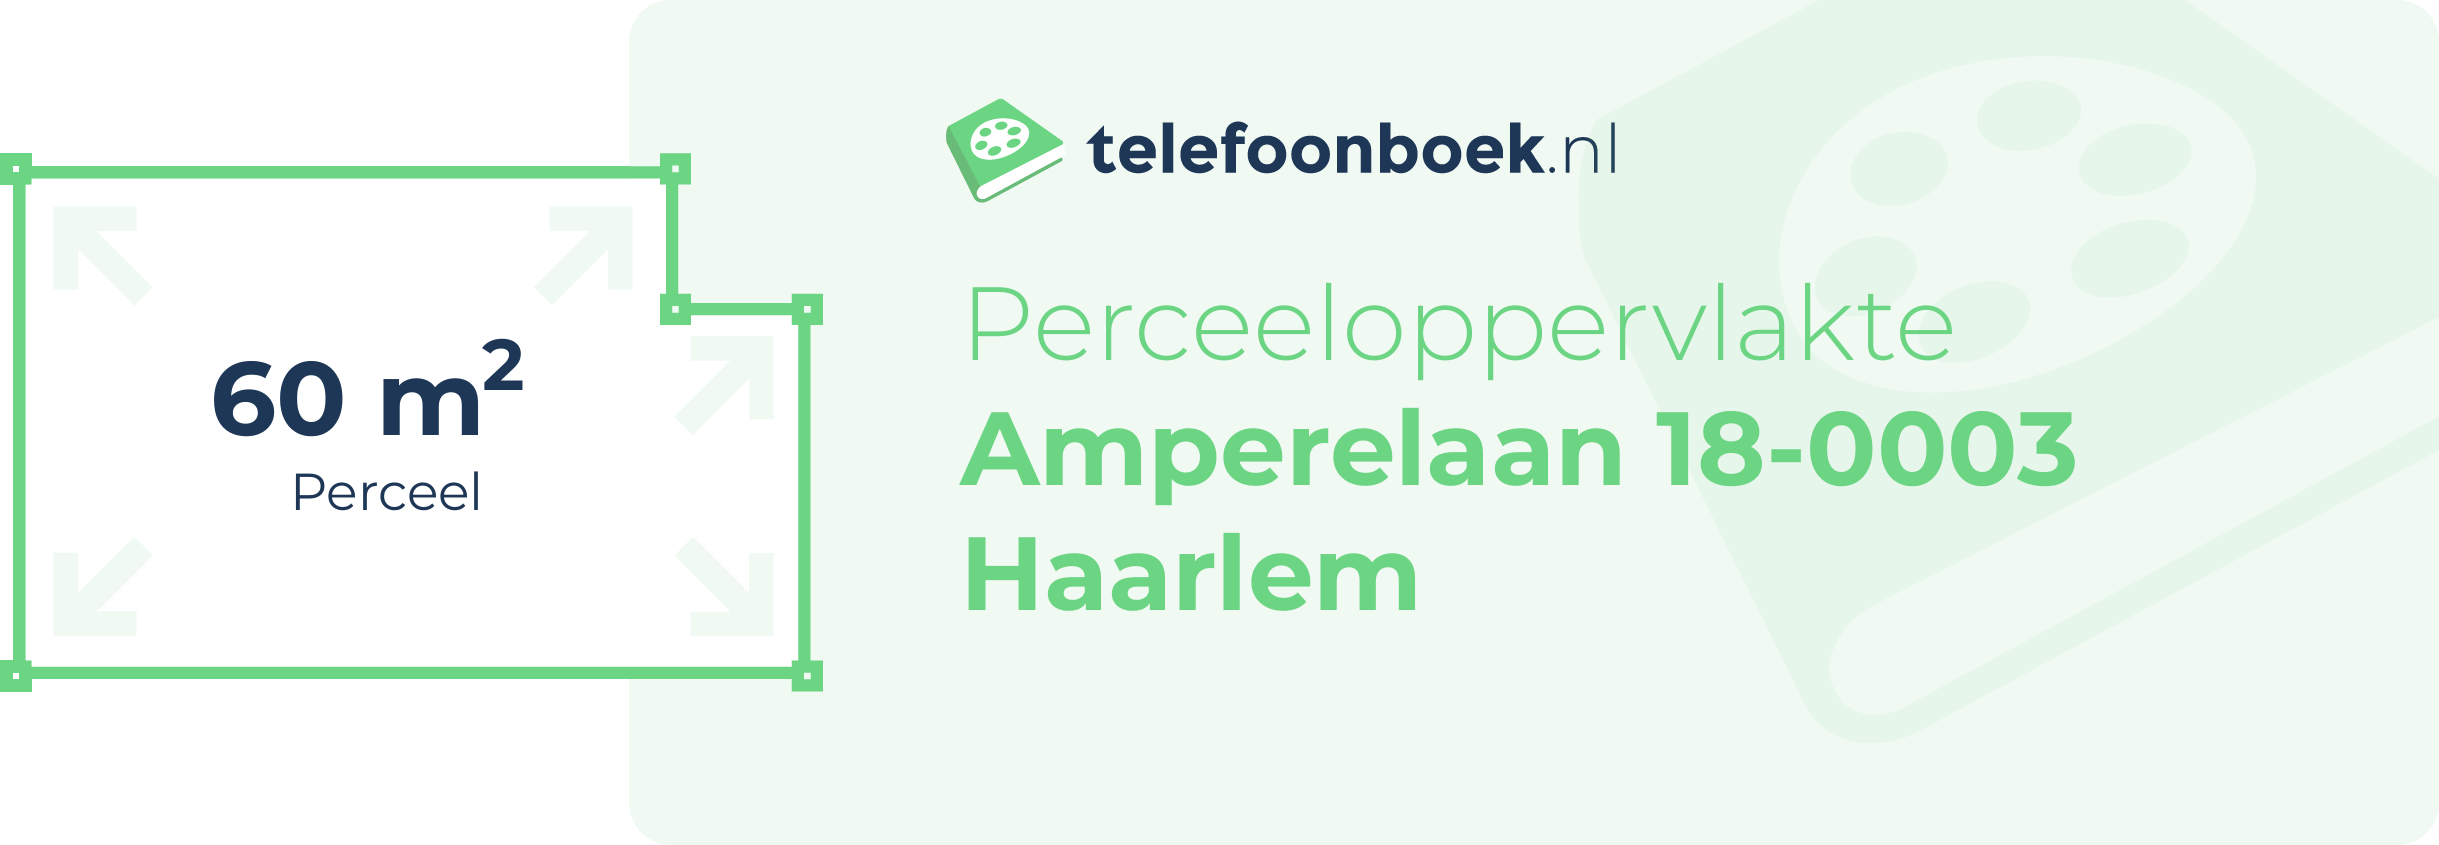 Perceeloppervlakte Amperelaan 18-0003 Haarlem